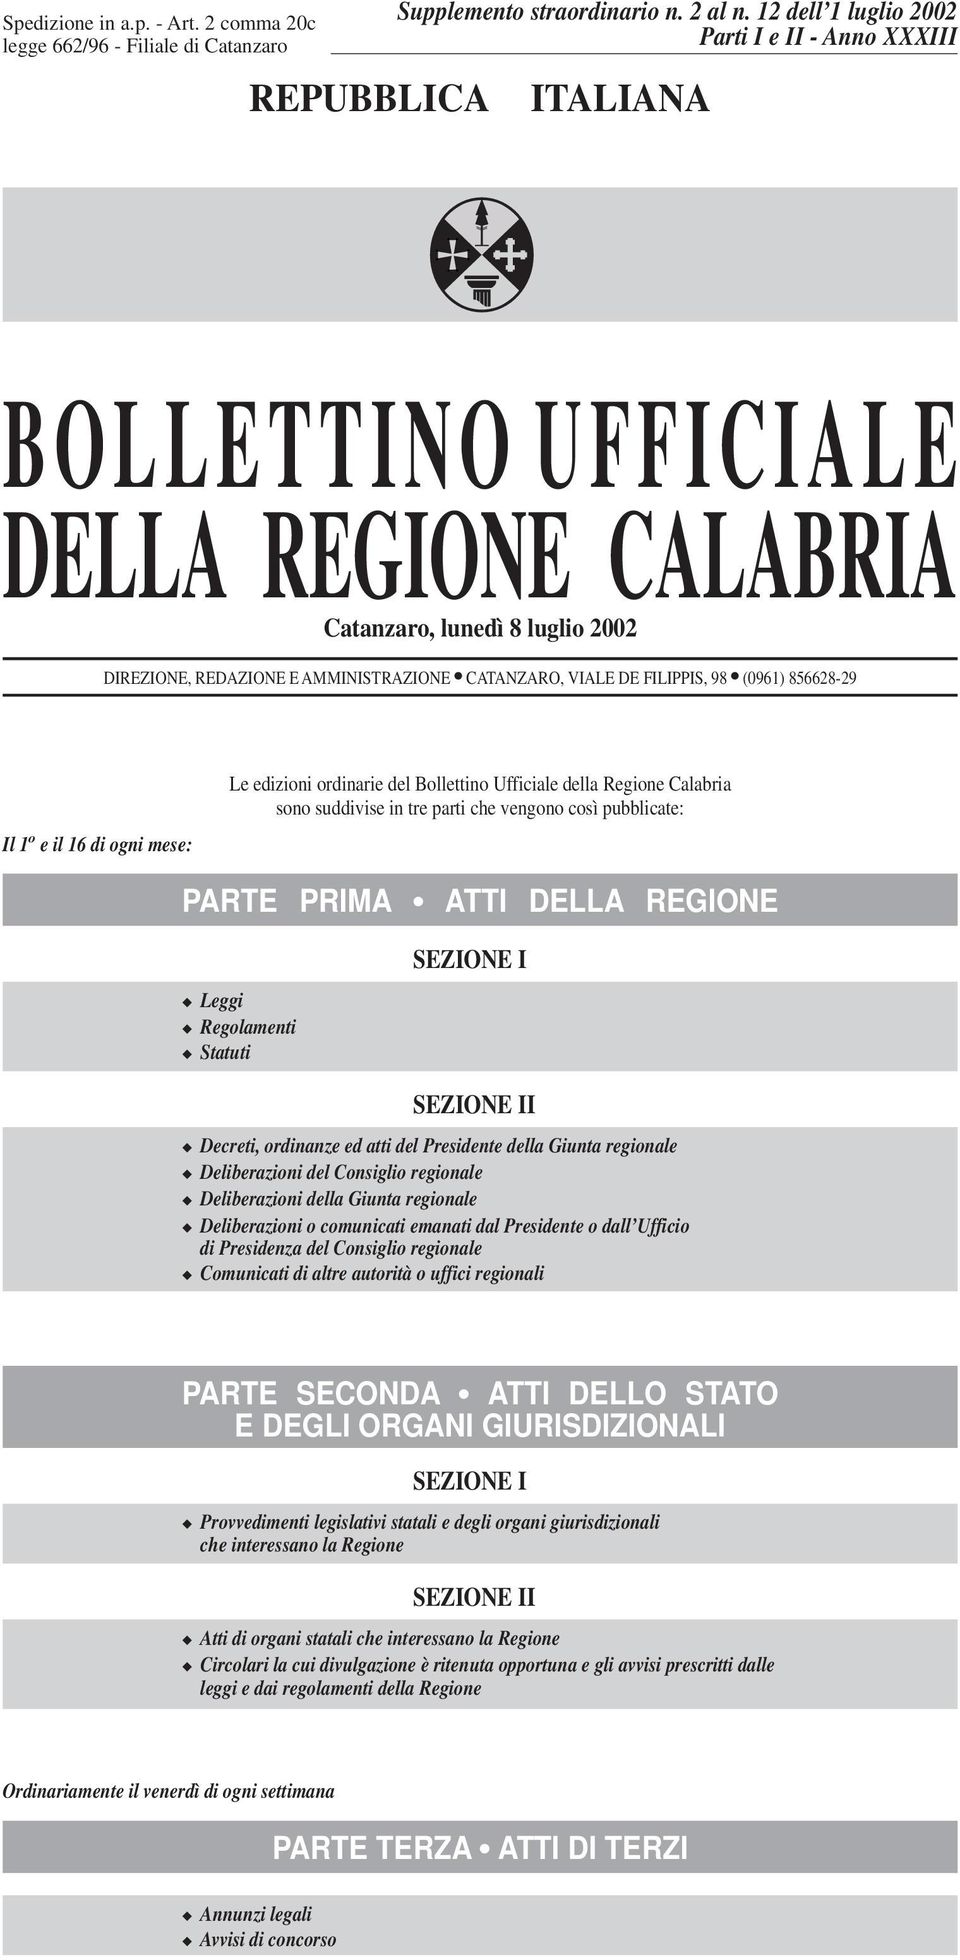 98 (0961) 856628-29 Il 1 o e il 16 di ogni mese: Le edizioni ordinarie del Bollettino Ufficiale della Regione Calabria sono suddivise in tre parti che vengono così pubblicate: PARTE PRIMA ATTI DELLA